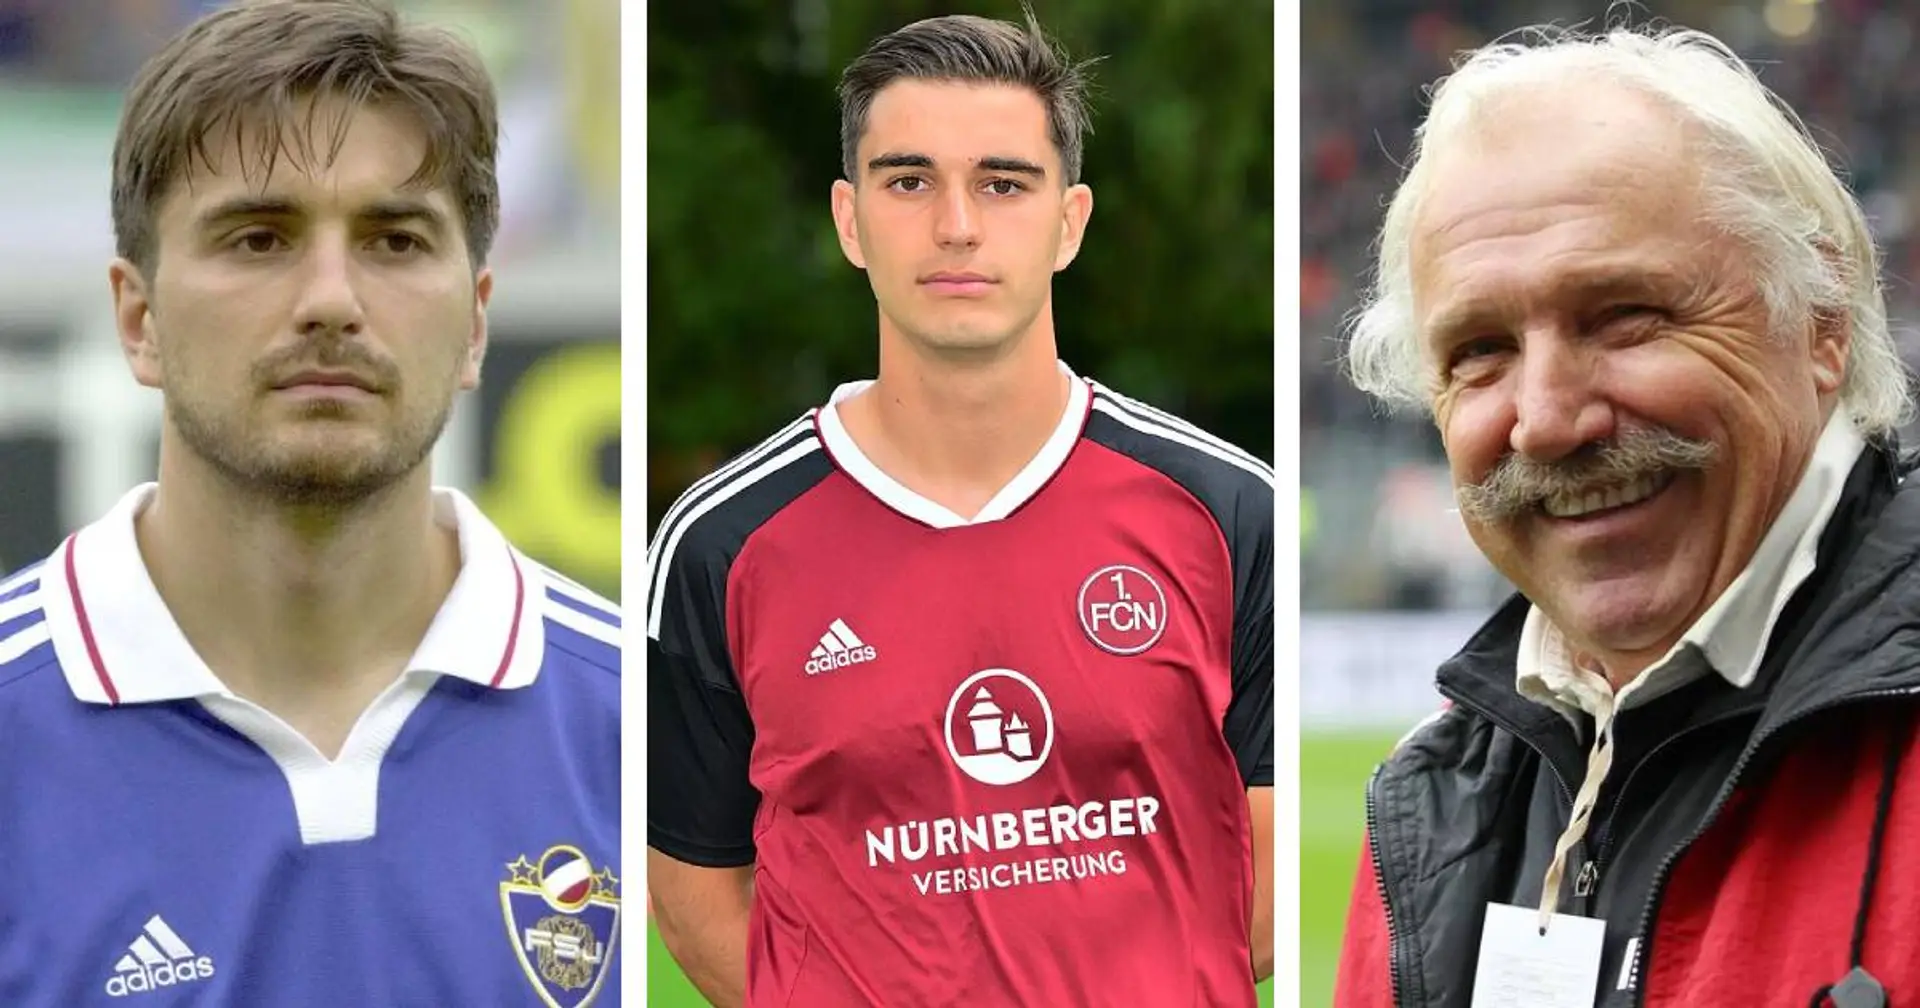 Nikola Komljenovic absolviert Probetraining bei BVB-U23: Er kommt aus einer prominenten Fußball-Familie